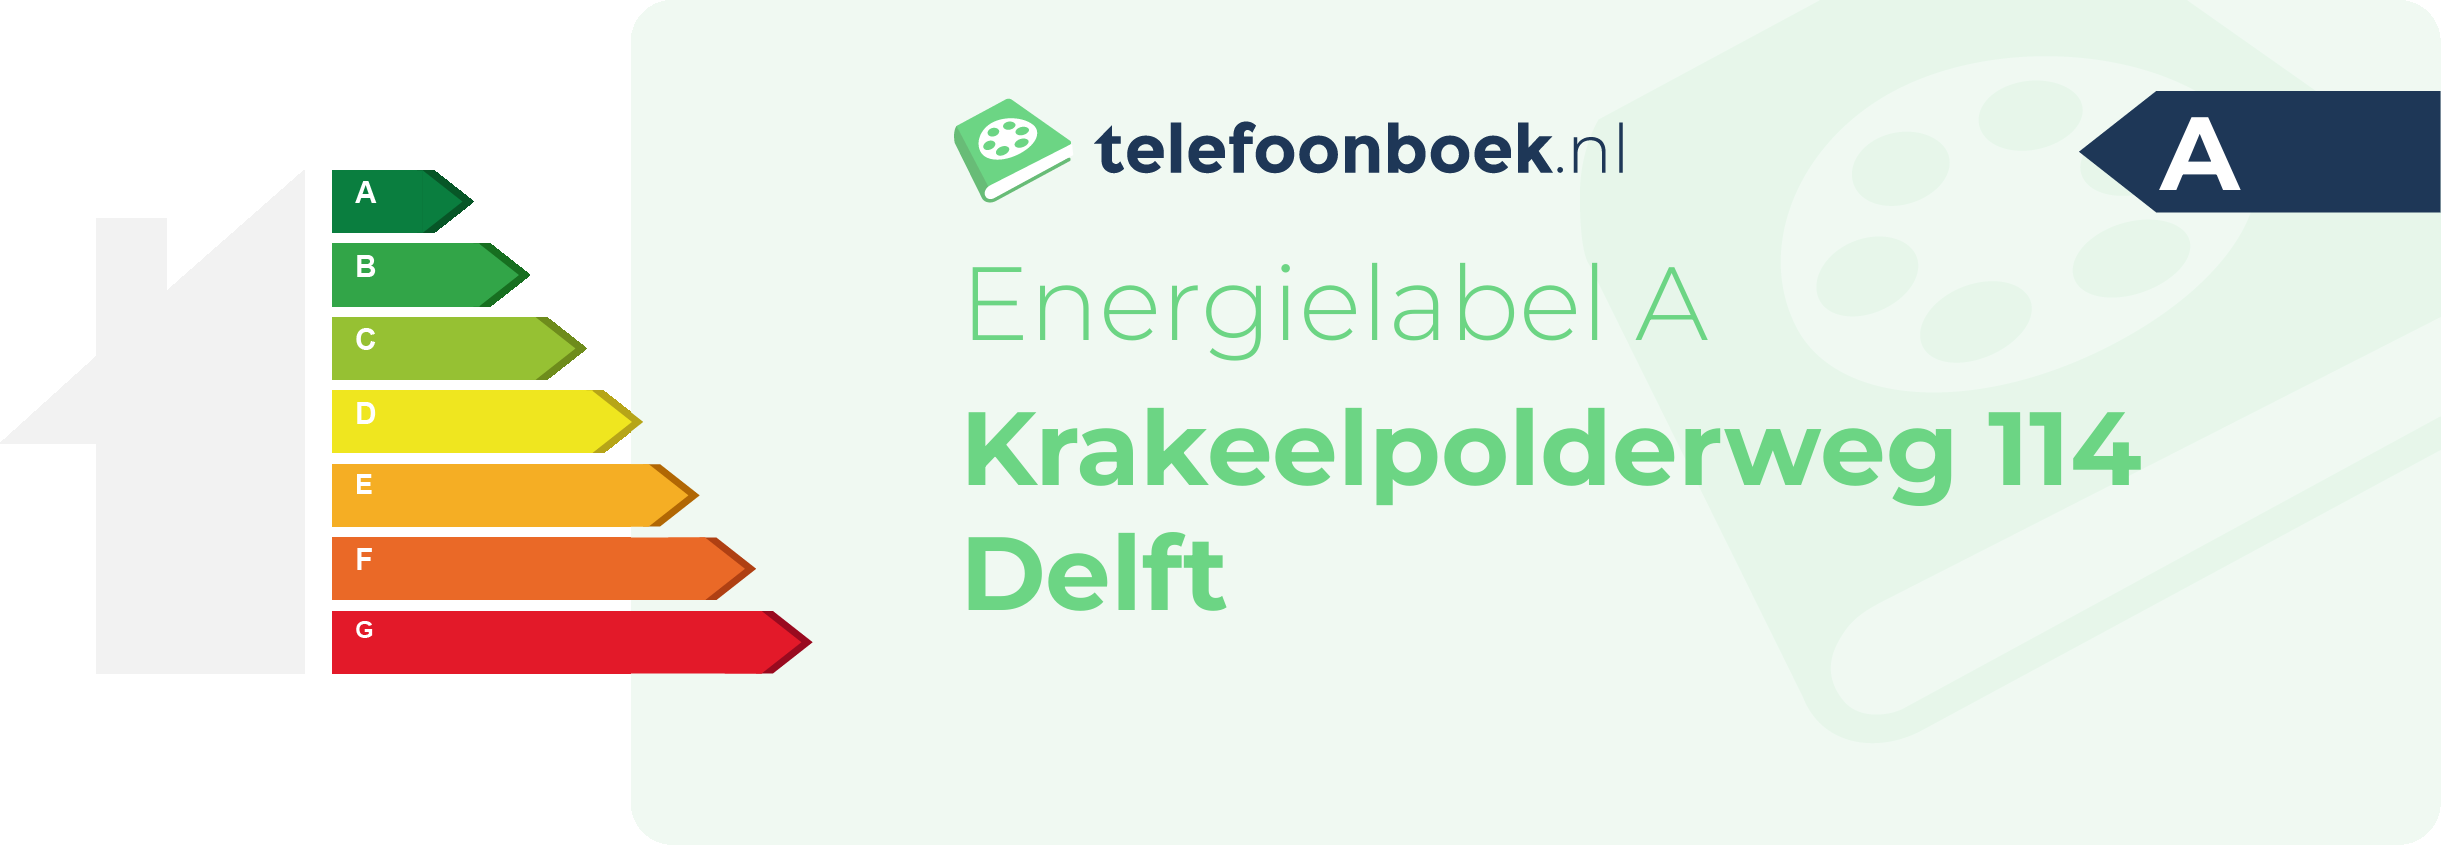 Energielabel Krakeelpolderweg 114 Delft